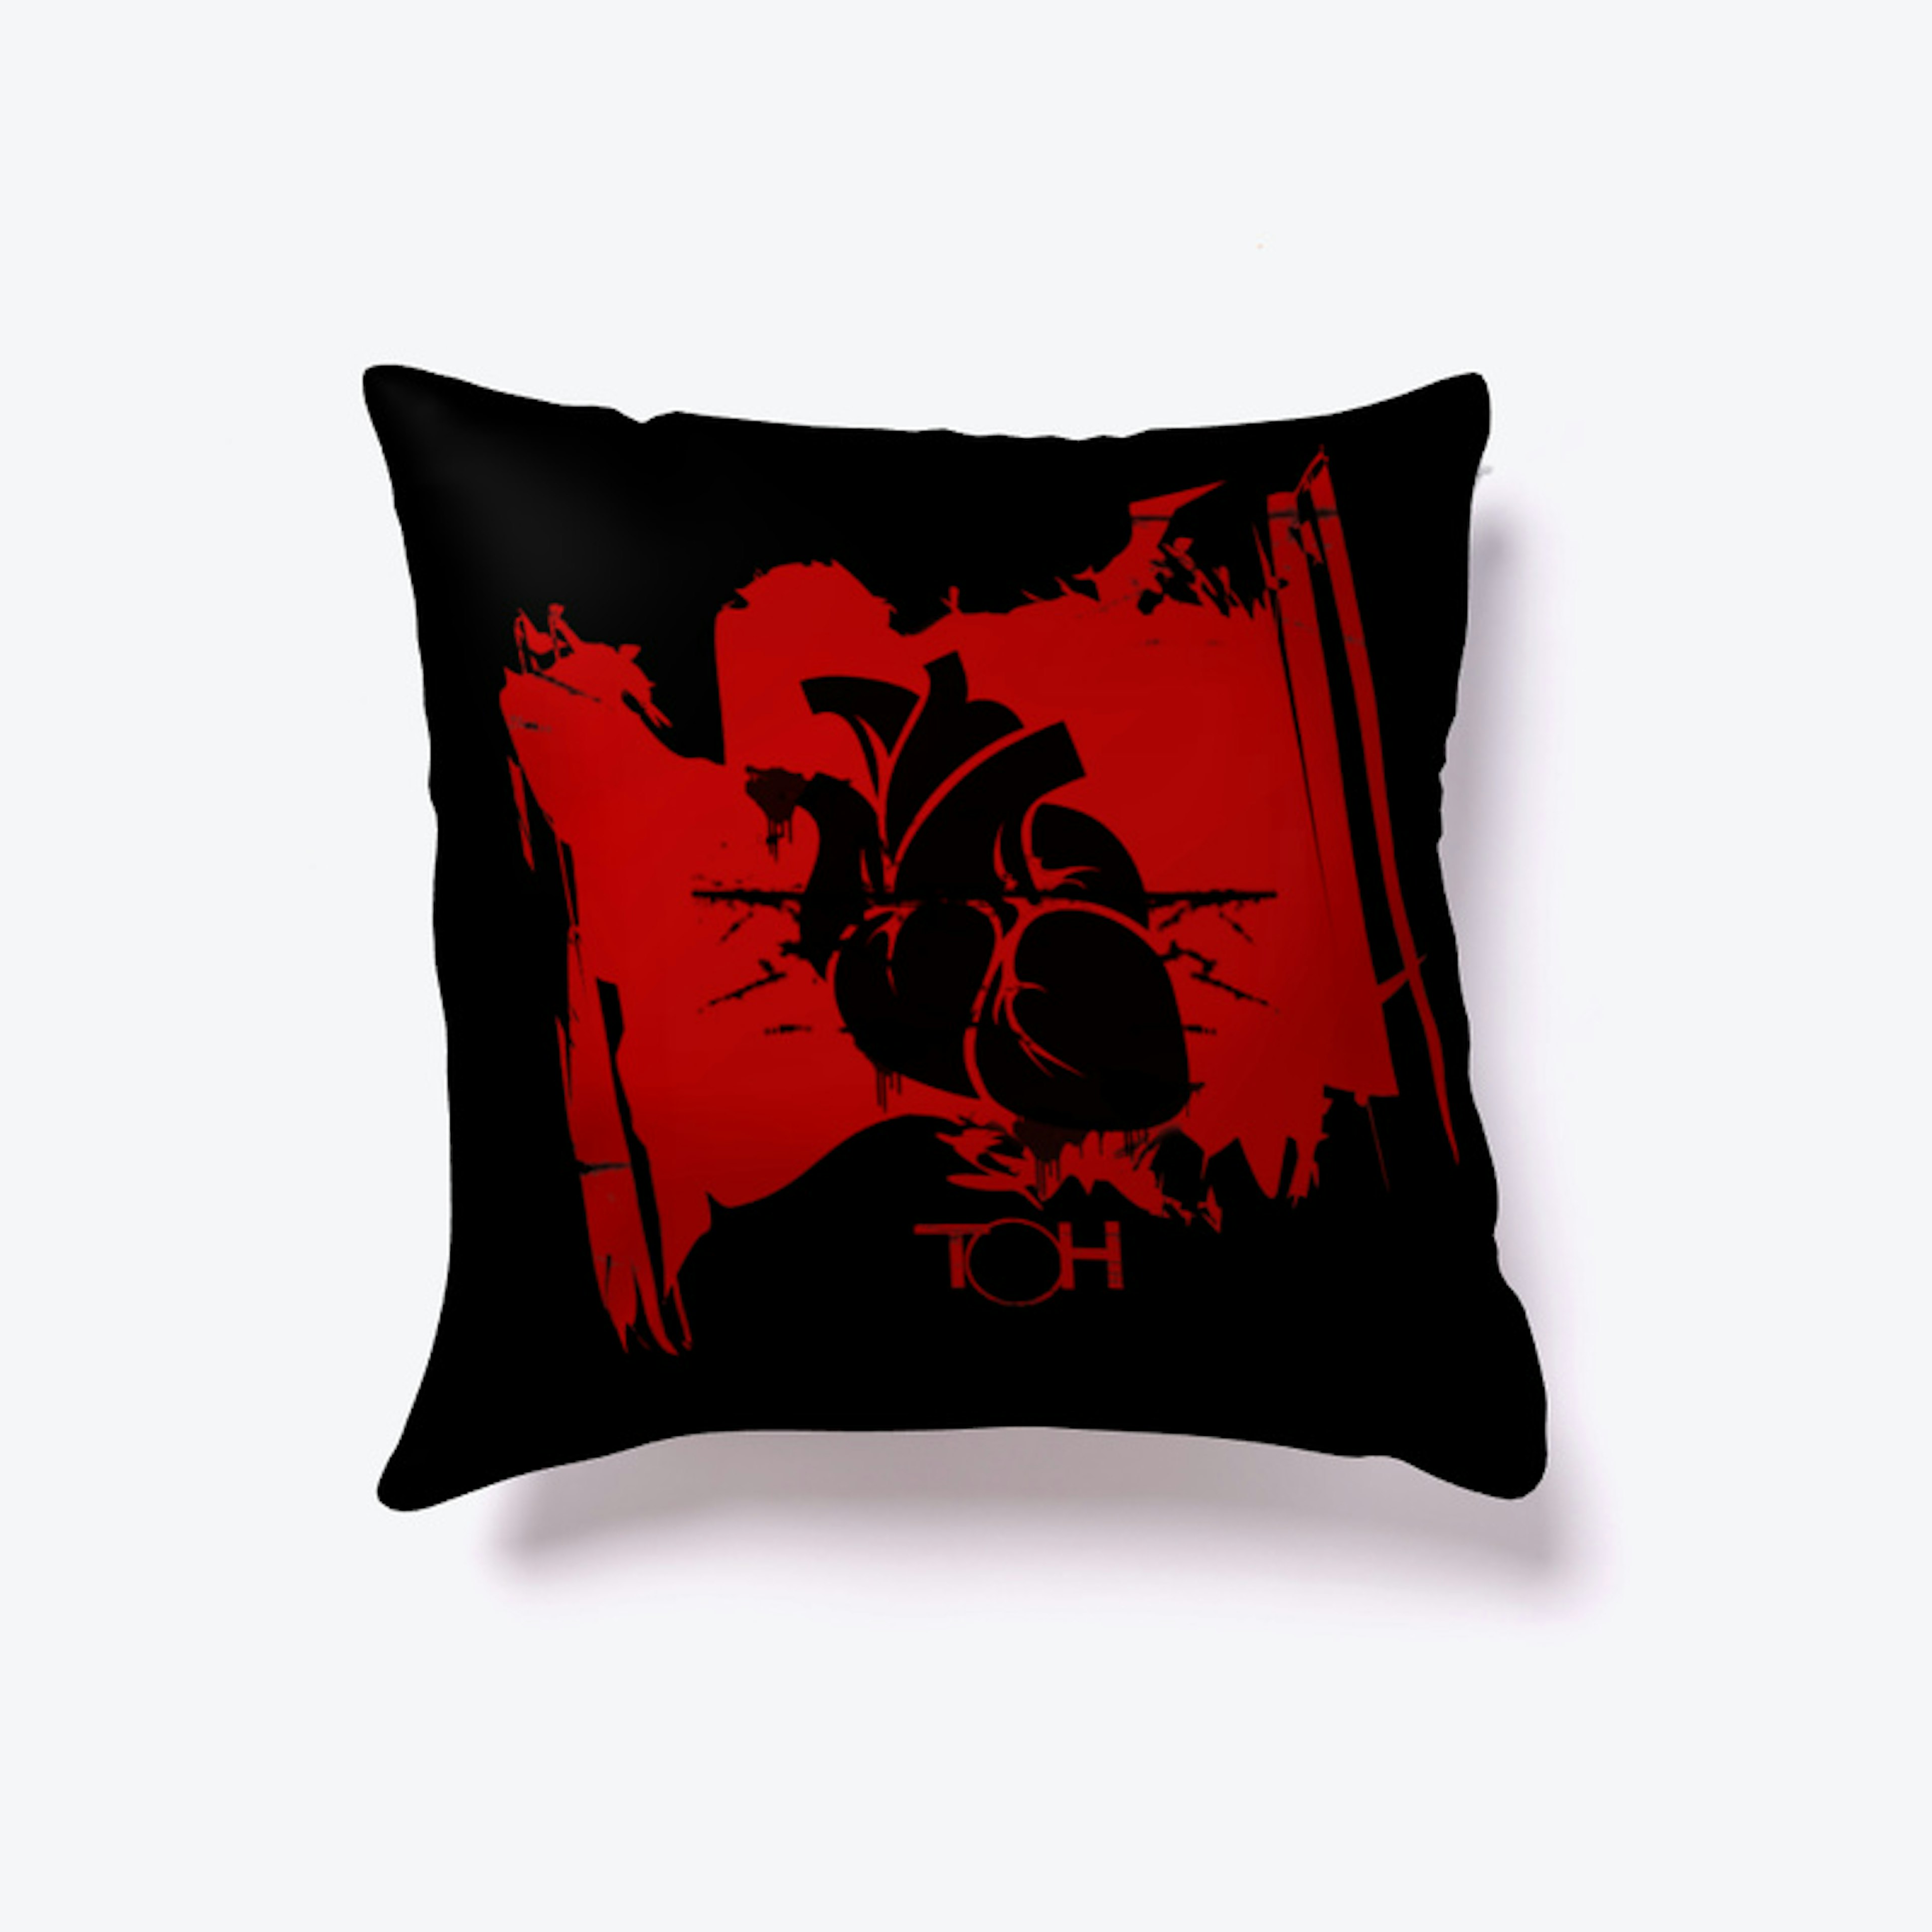 TOH- Grunge Heart Pillow